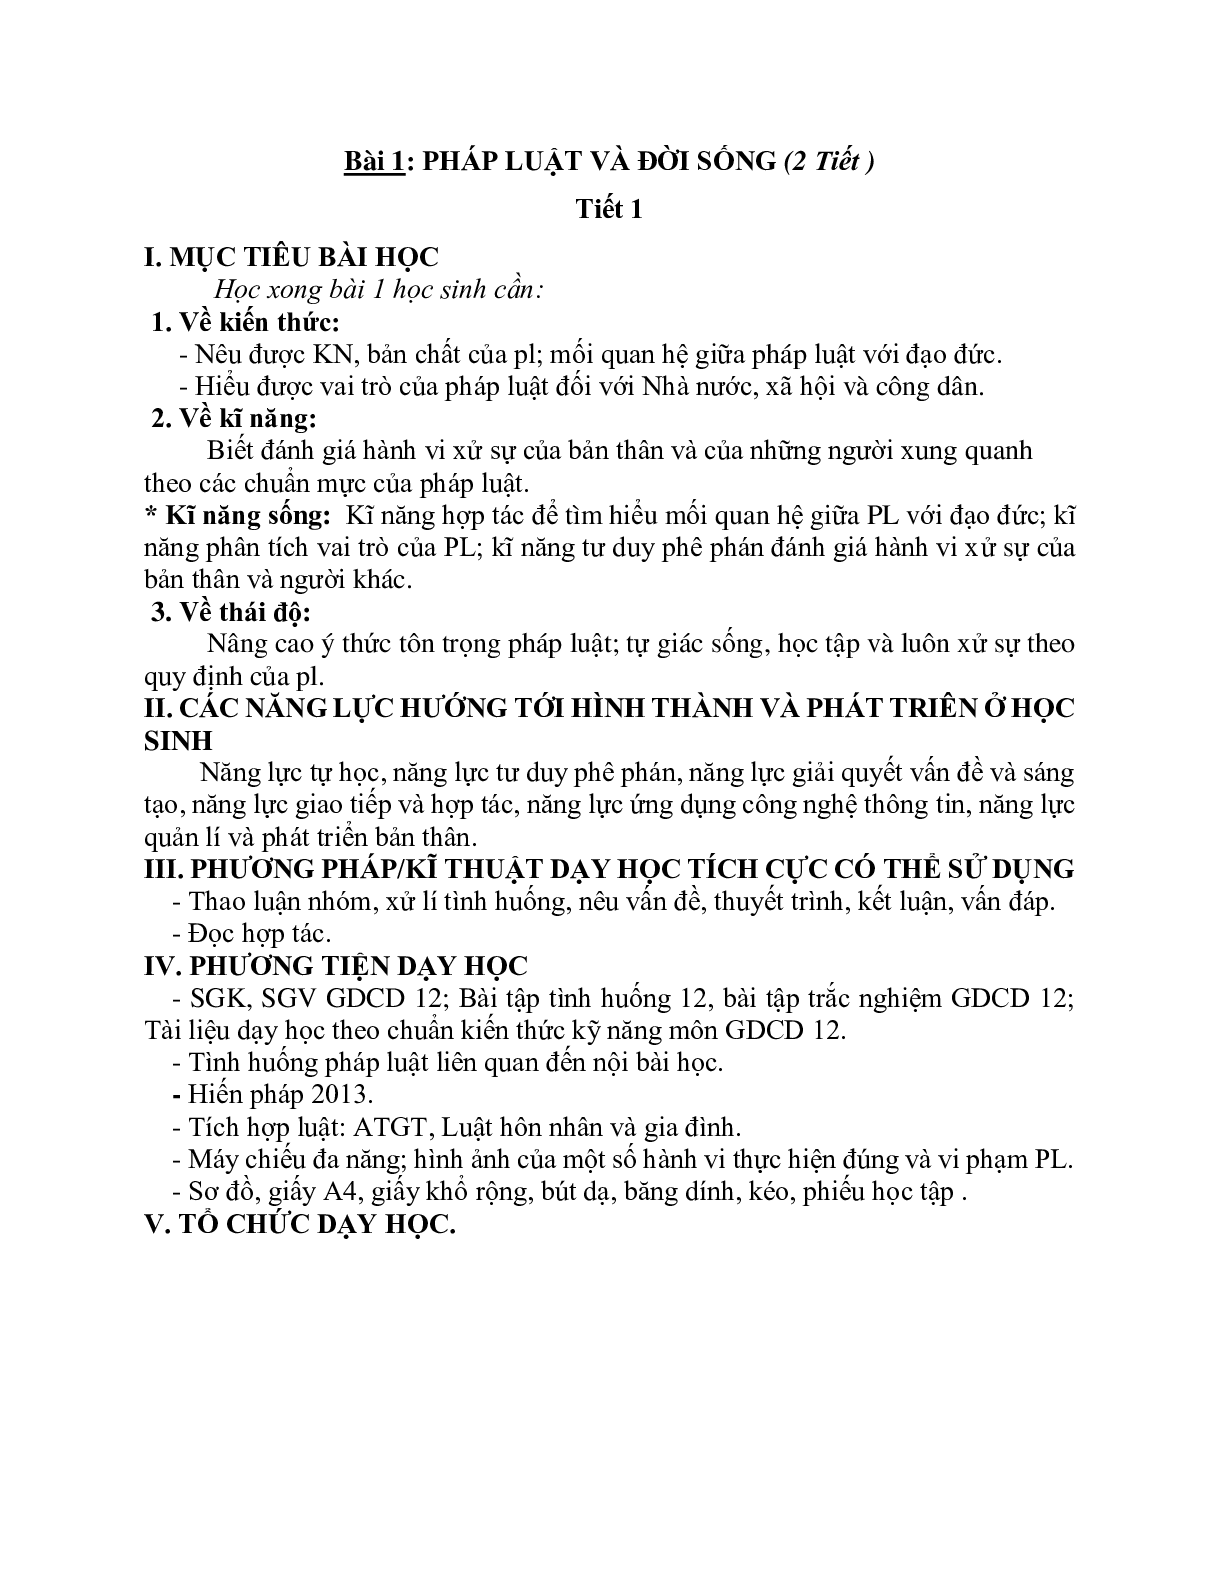 Giáo án GDCD 12 Bài 1 Pháp luật và đời sống tiết 1 mới nhất (trang 1)